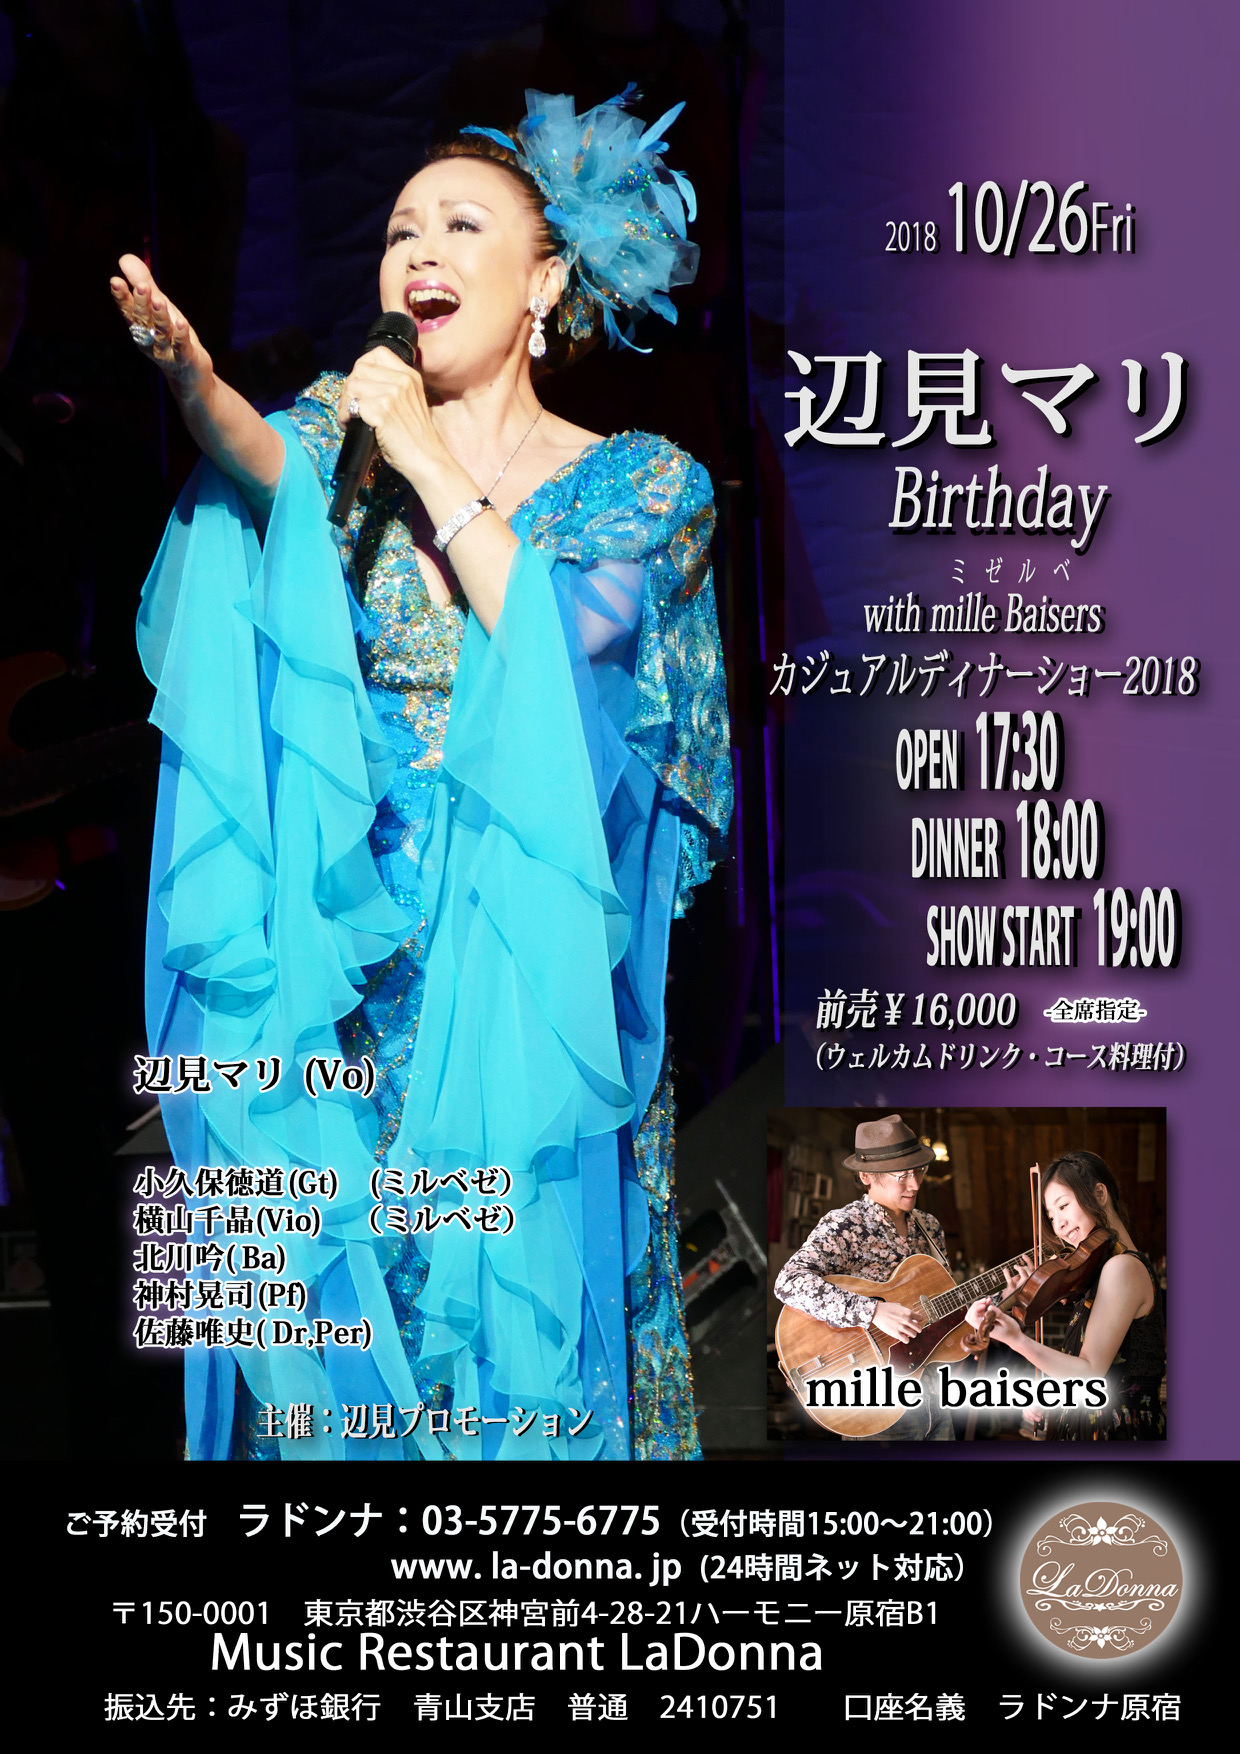 辺見マリ Birthday with mille baisers カジュアルディナーショー2018